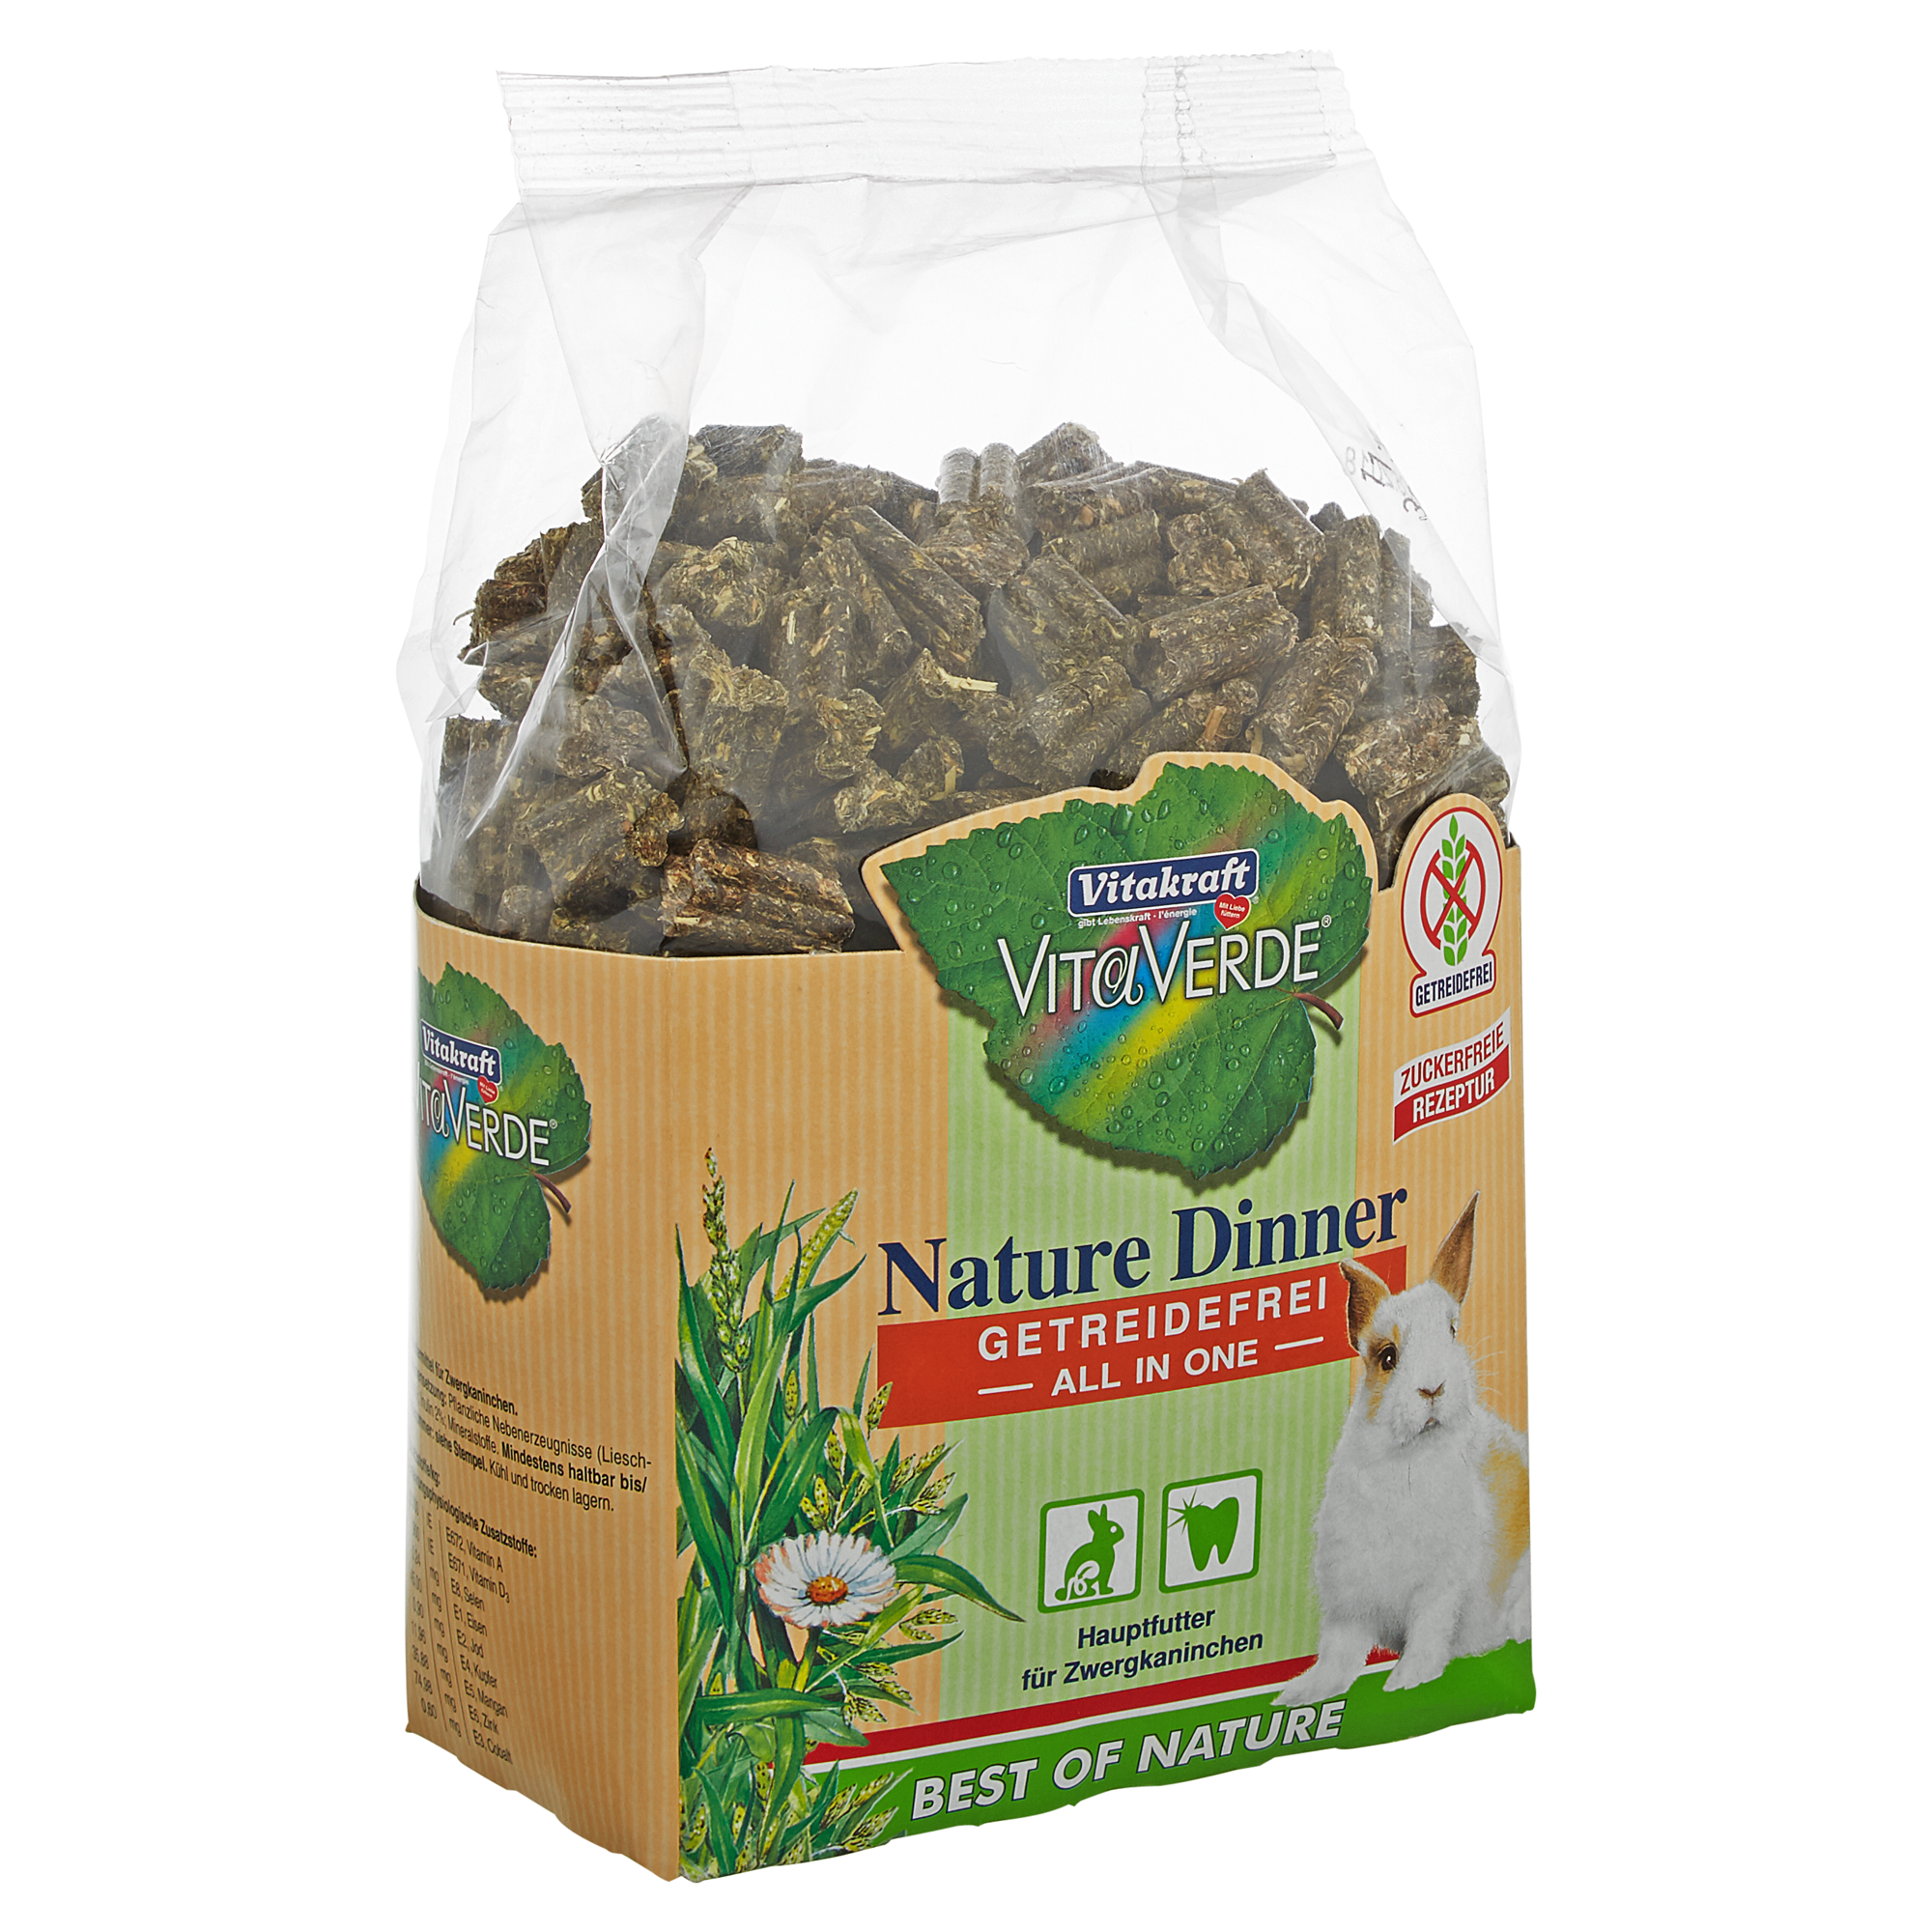 Nagetierfutter "Vita Verde" Nature Dinner All in one für Zwergkaninchen 800 g + product picture